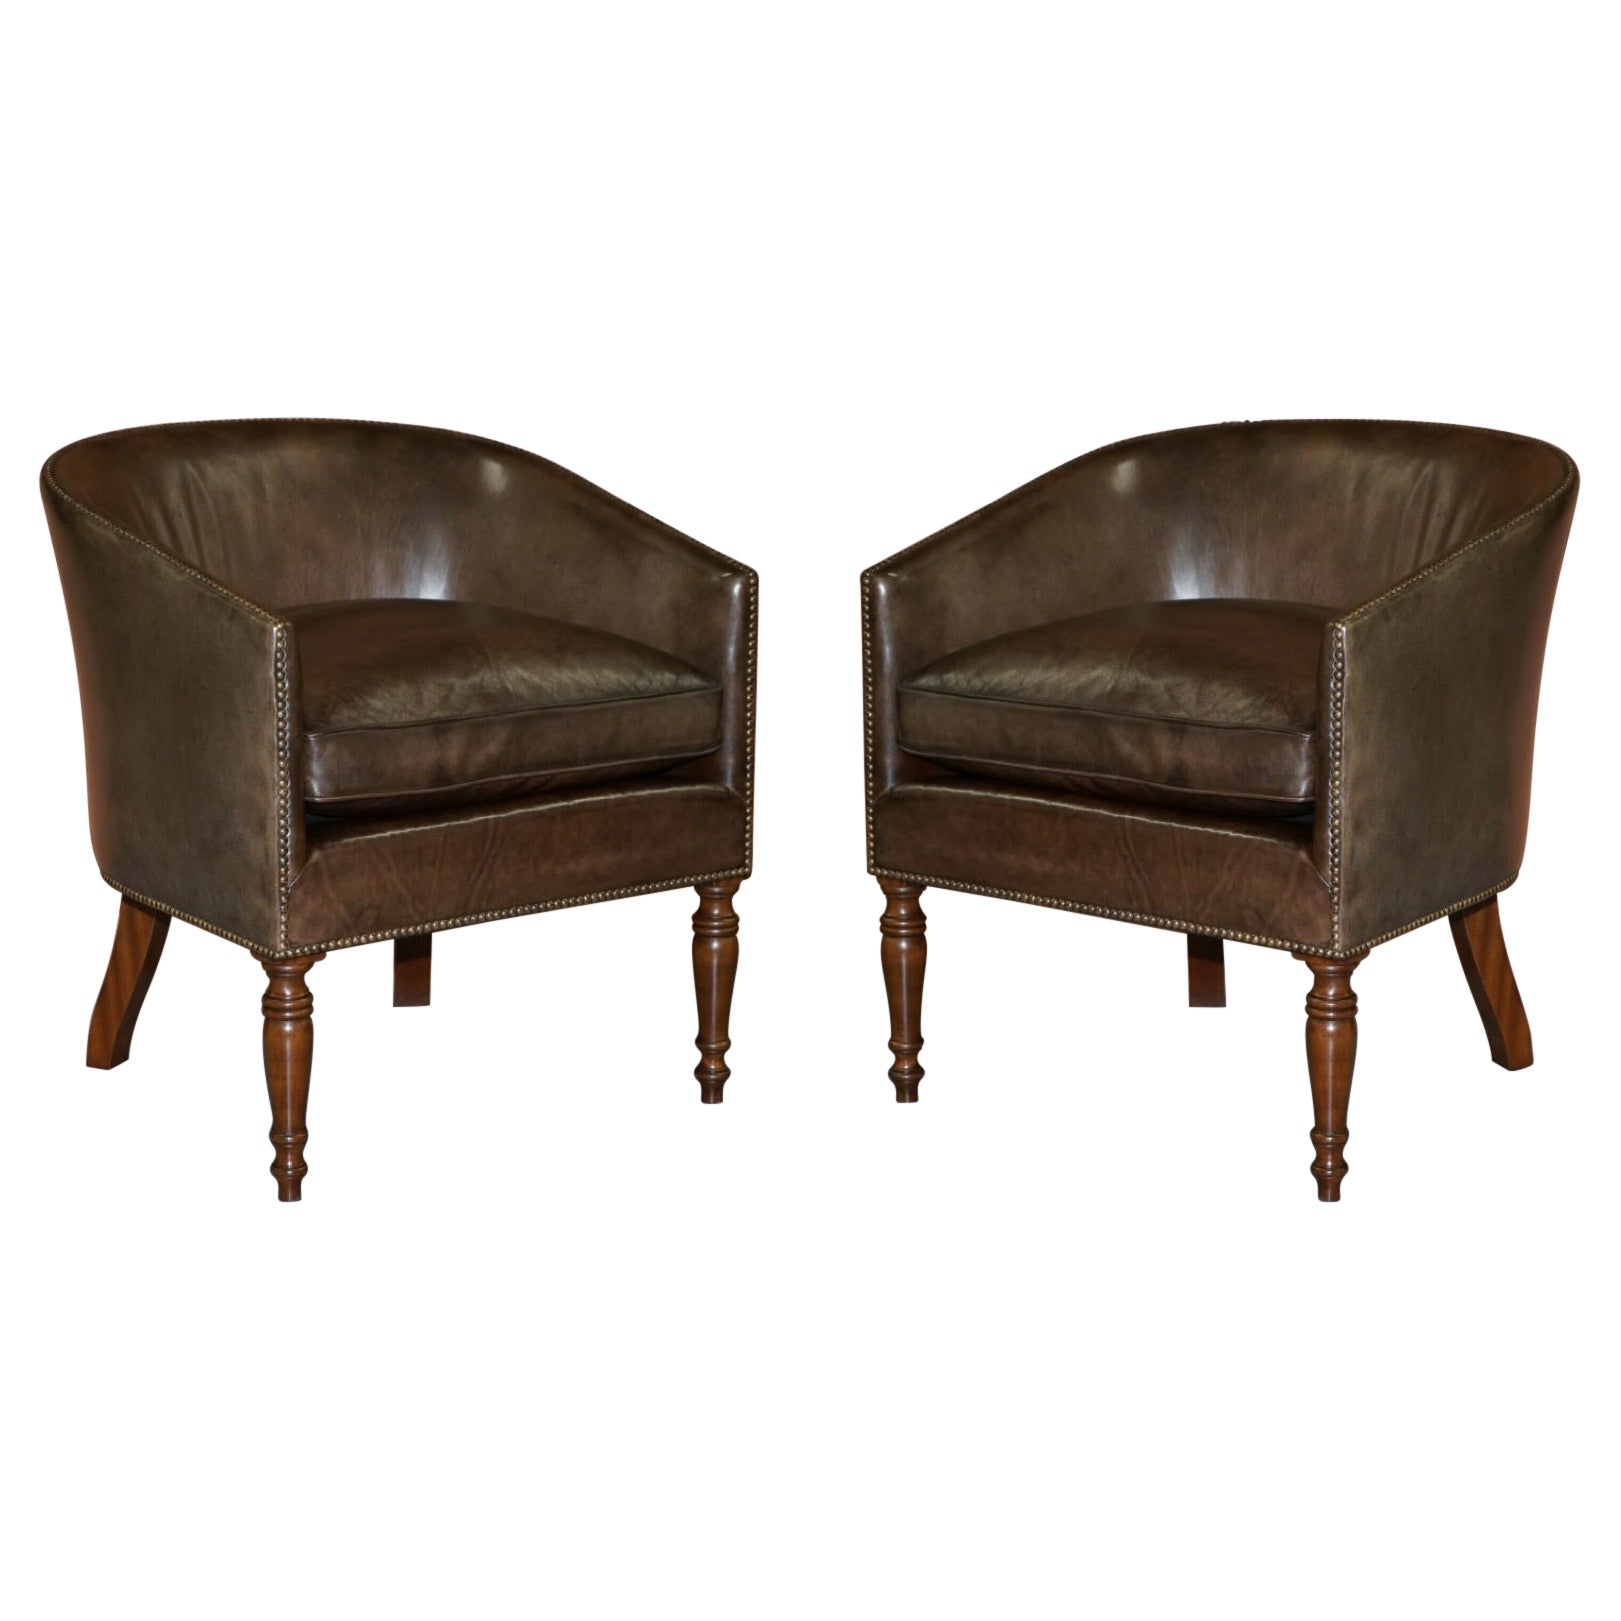 Ein Paar erhabene handgefärbte Sessel mit fassförmiger Rückenlehne aus braunem Leder, bequem